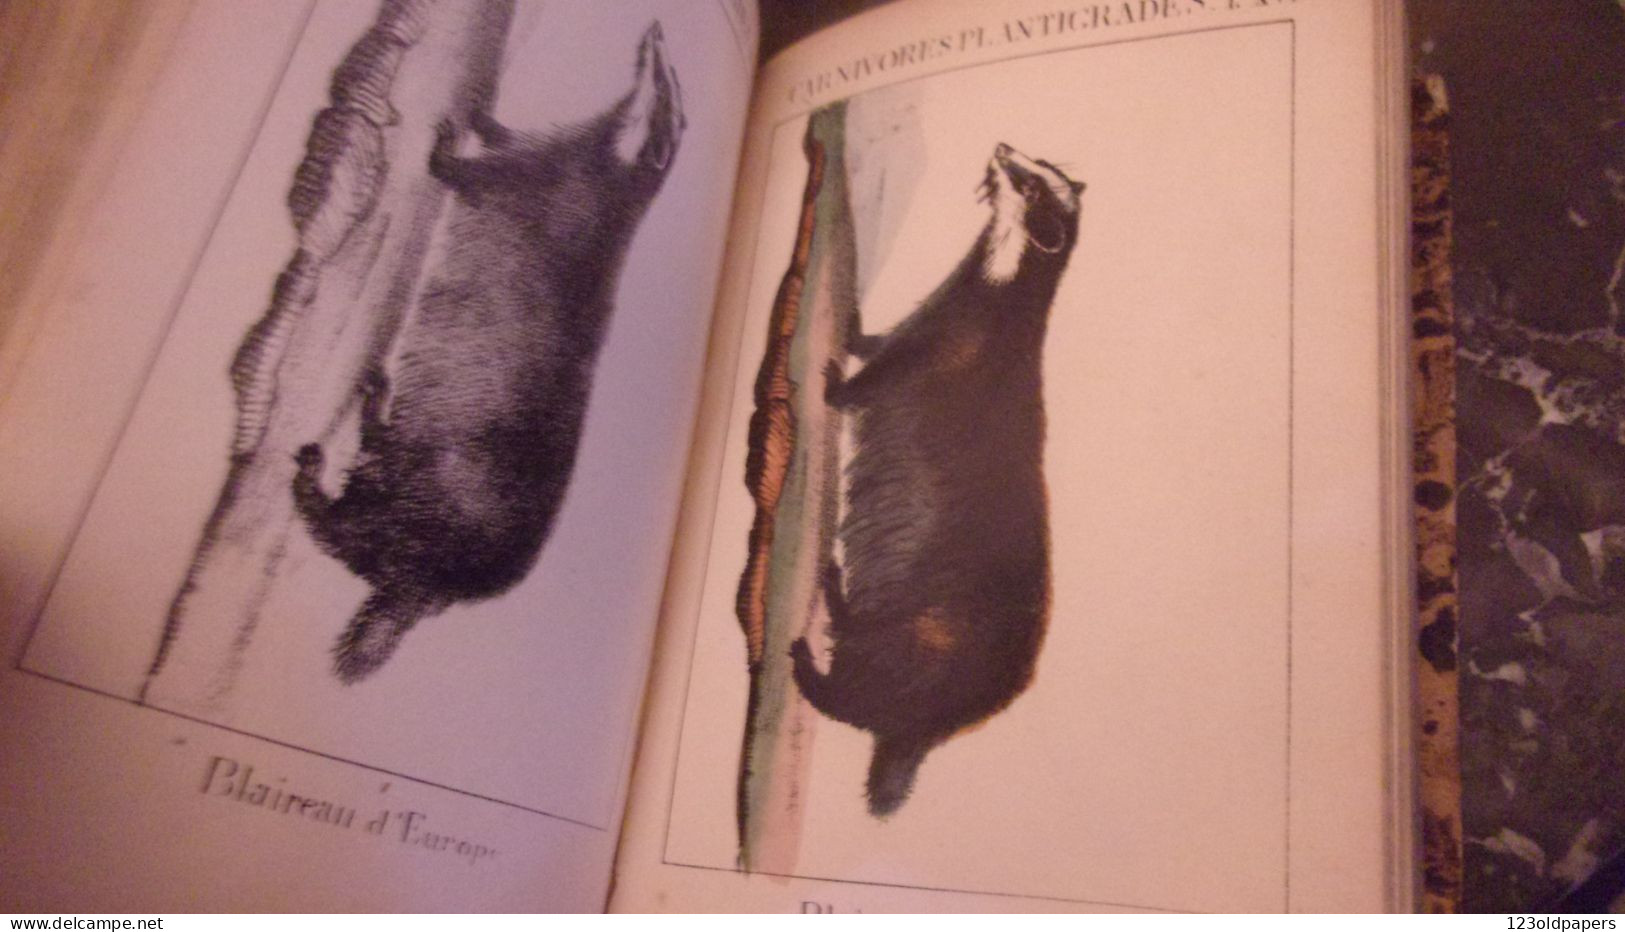 EO 1830   ‎MEYRANX M.‎ ‎Résumé de mammalogie ou d’histoire naturelle des mammifères 48  PLANCHES COULEURS